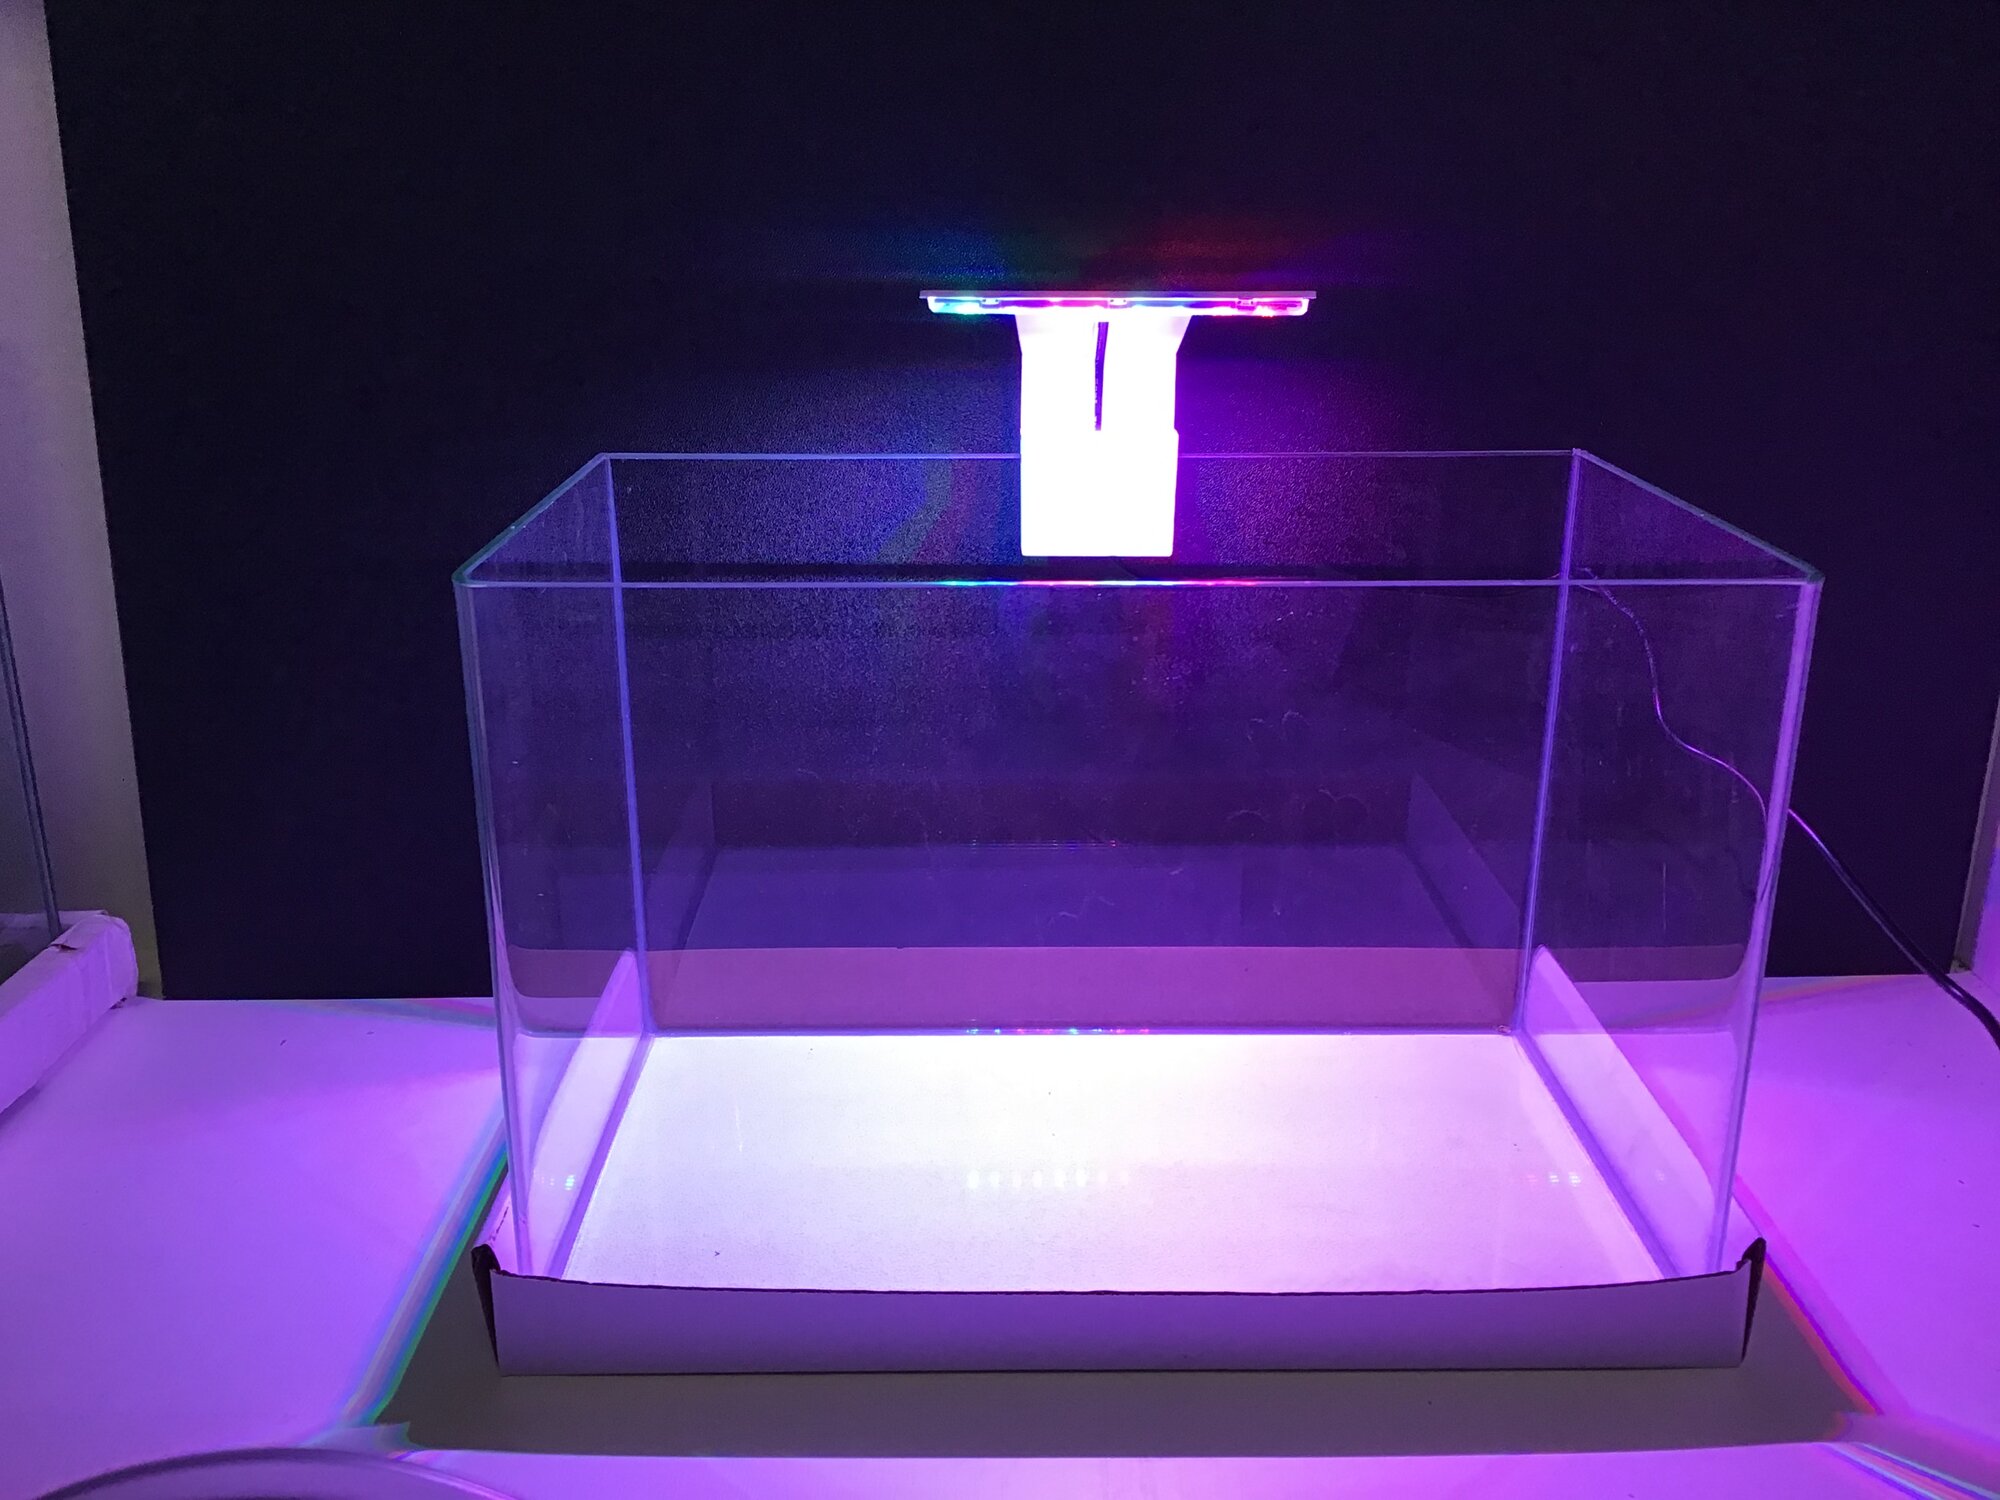 Аквариумный Светодиодный светильник для нано-аквариума от 10-40 литров, белый и цветной, 6 Вт